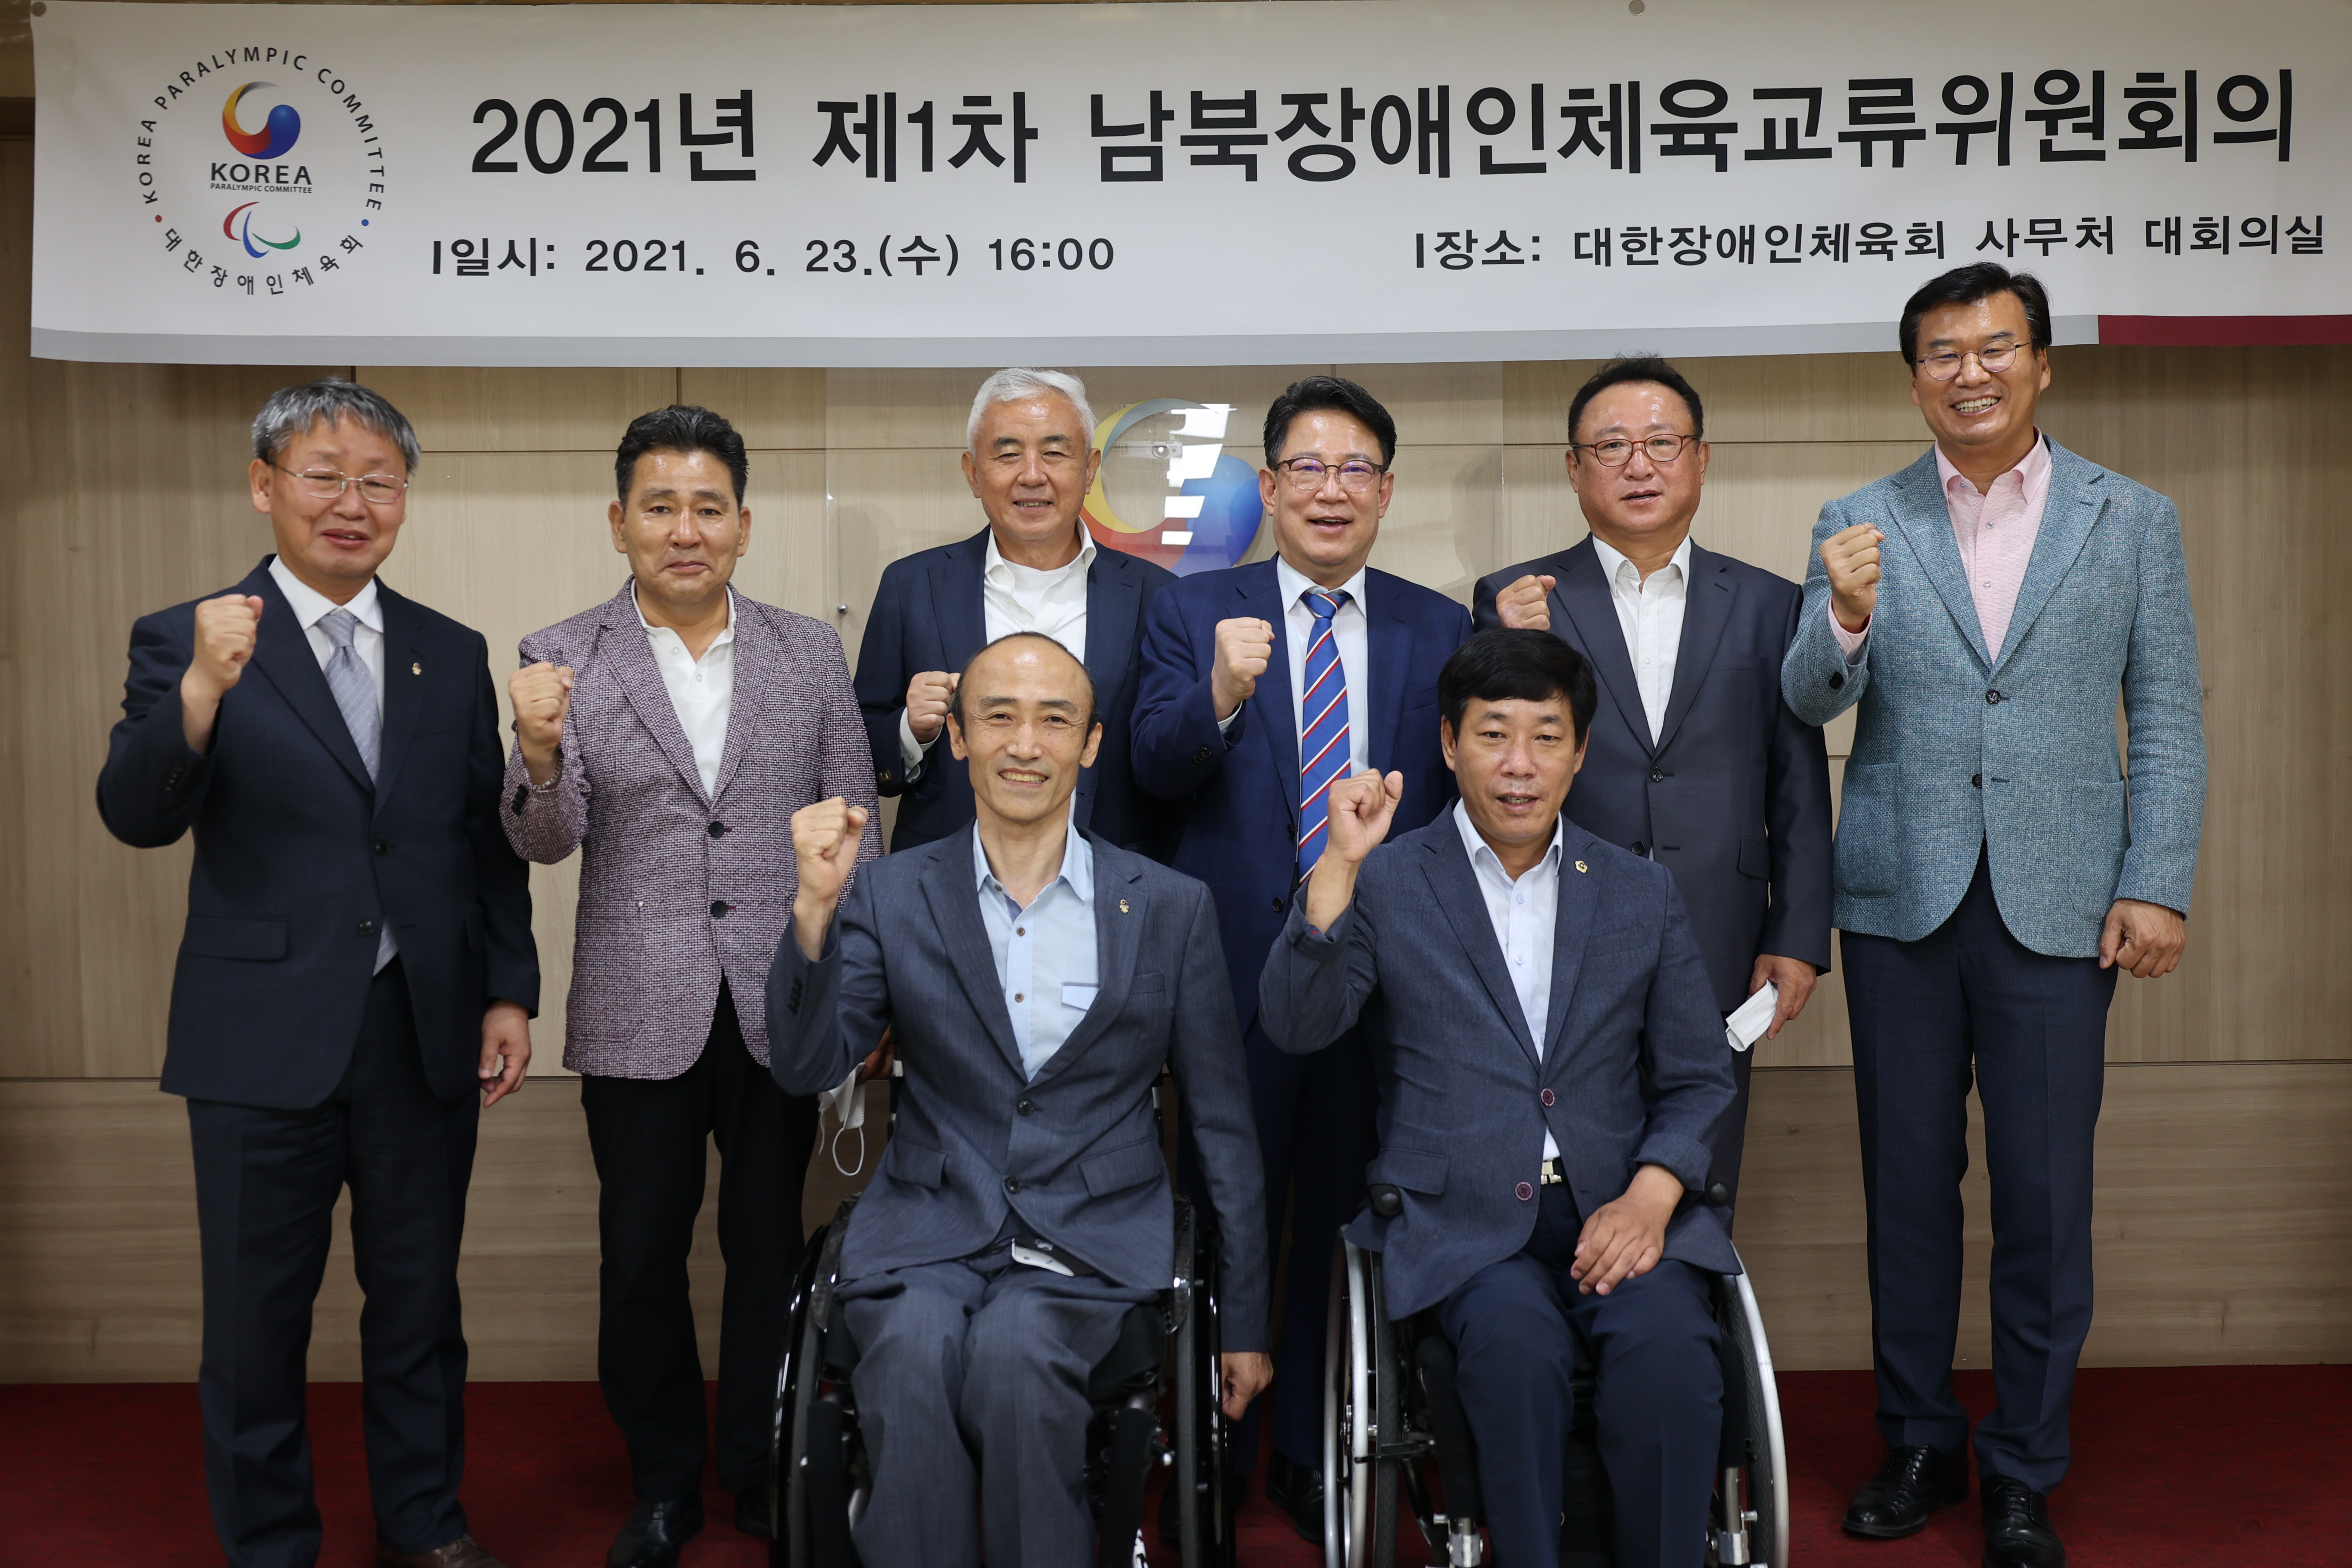 남북장애인체육교류위원회 구성 및 2021년 1차 회의 개최 참석